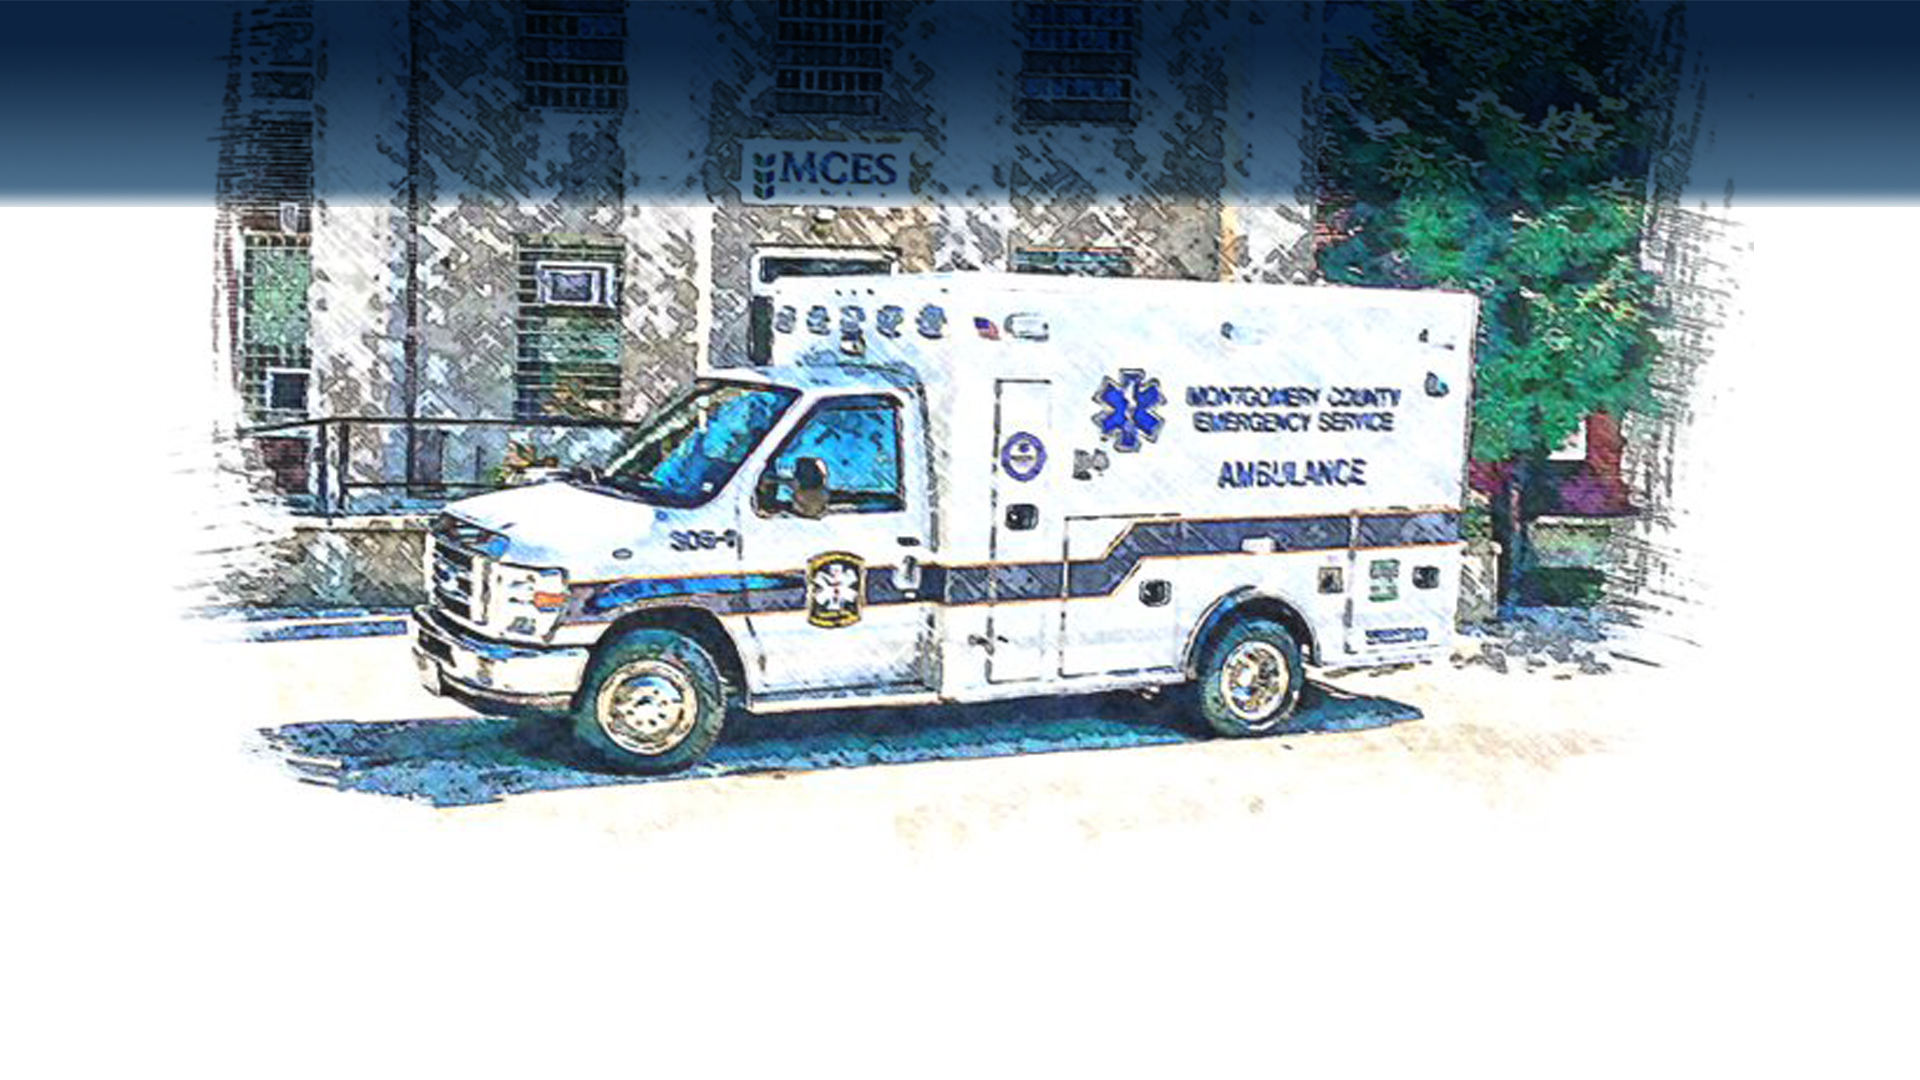 MCES Ambulance